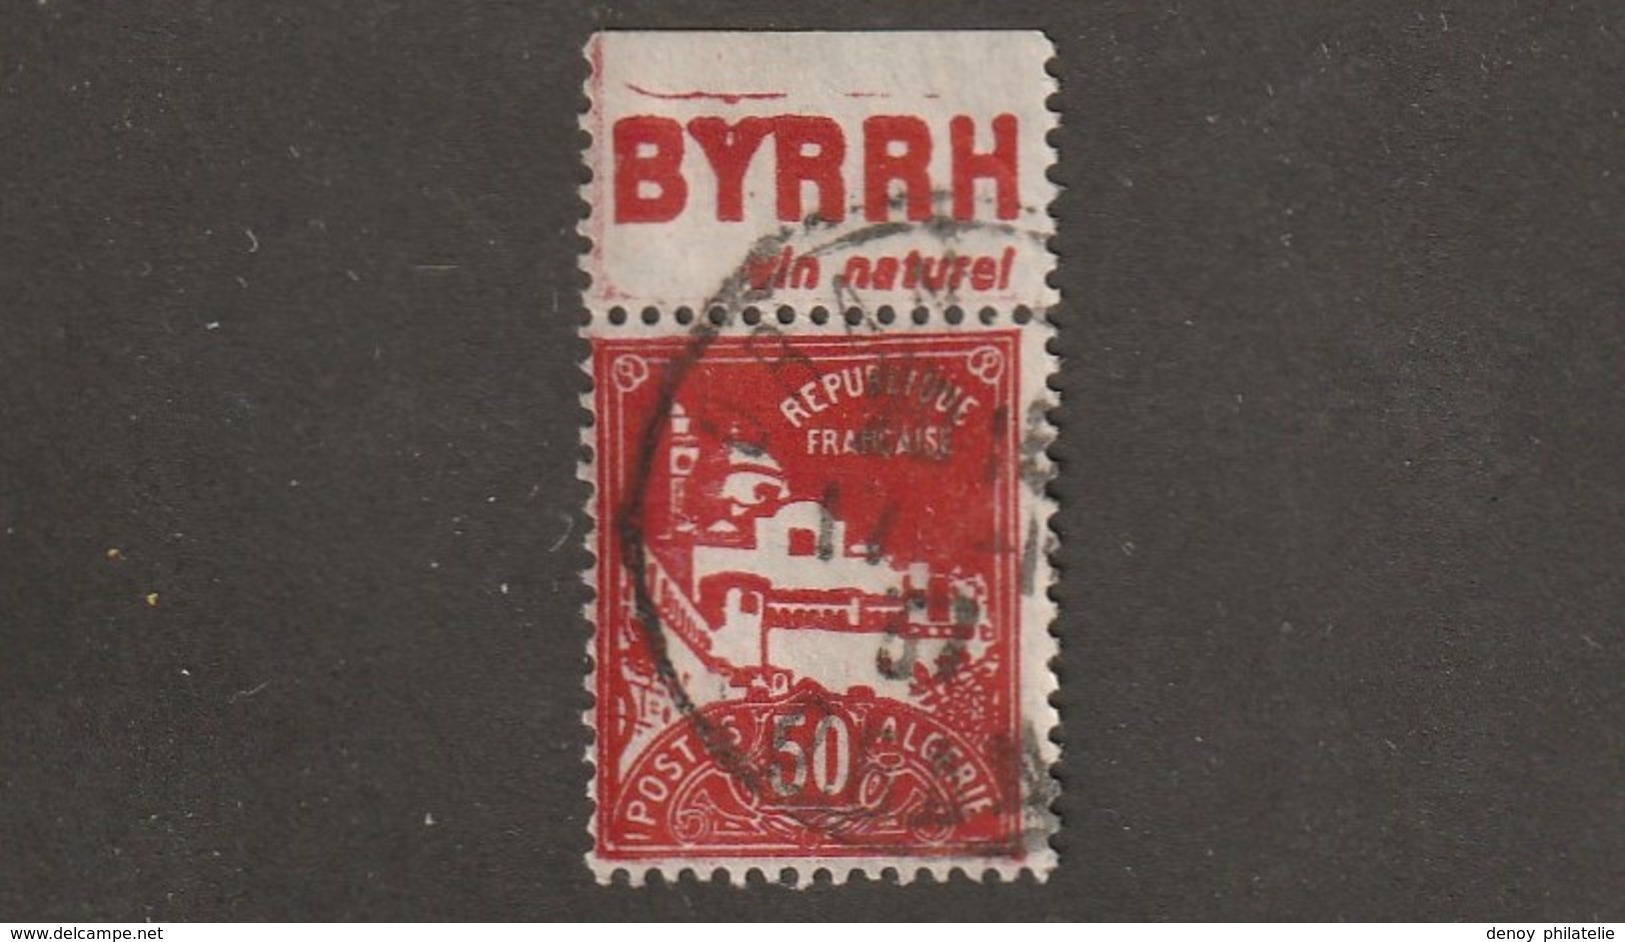 Algérie Timbre N° 79 A Avec Bande Publicitaire ByrrH - Used Stamps